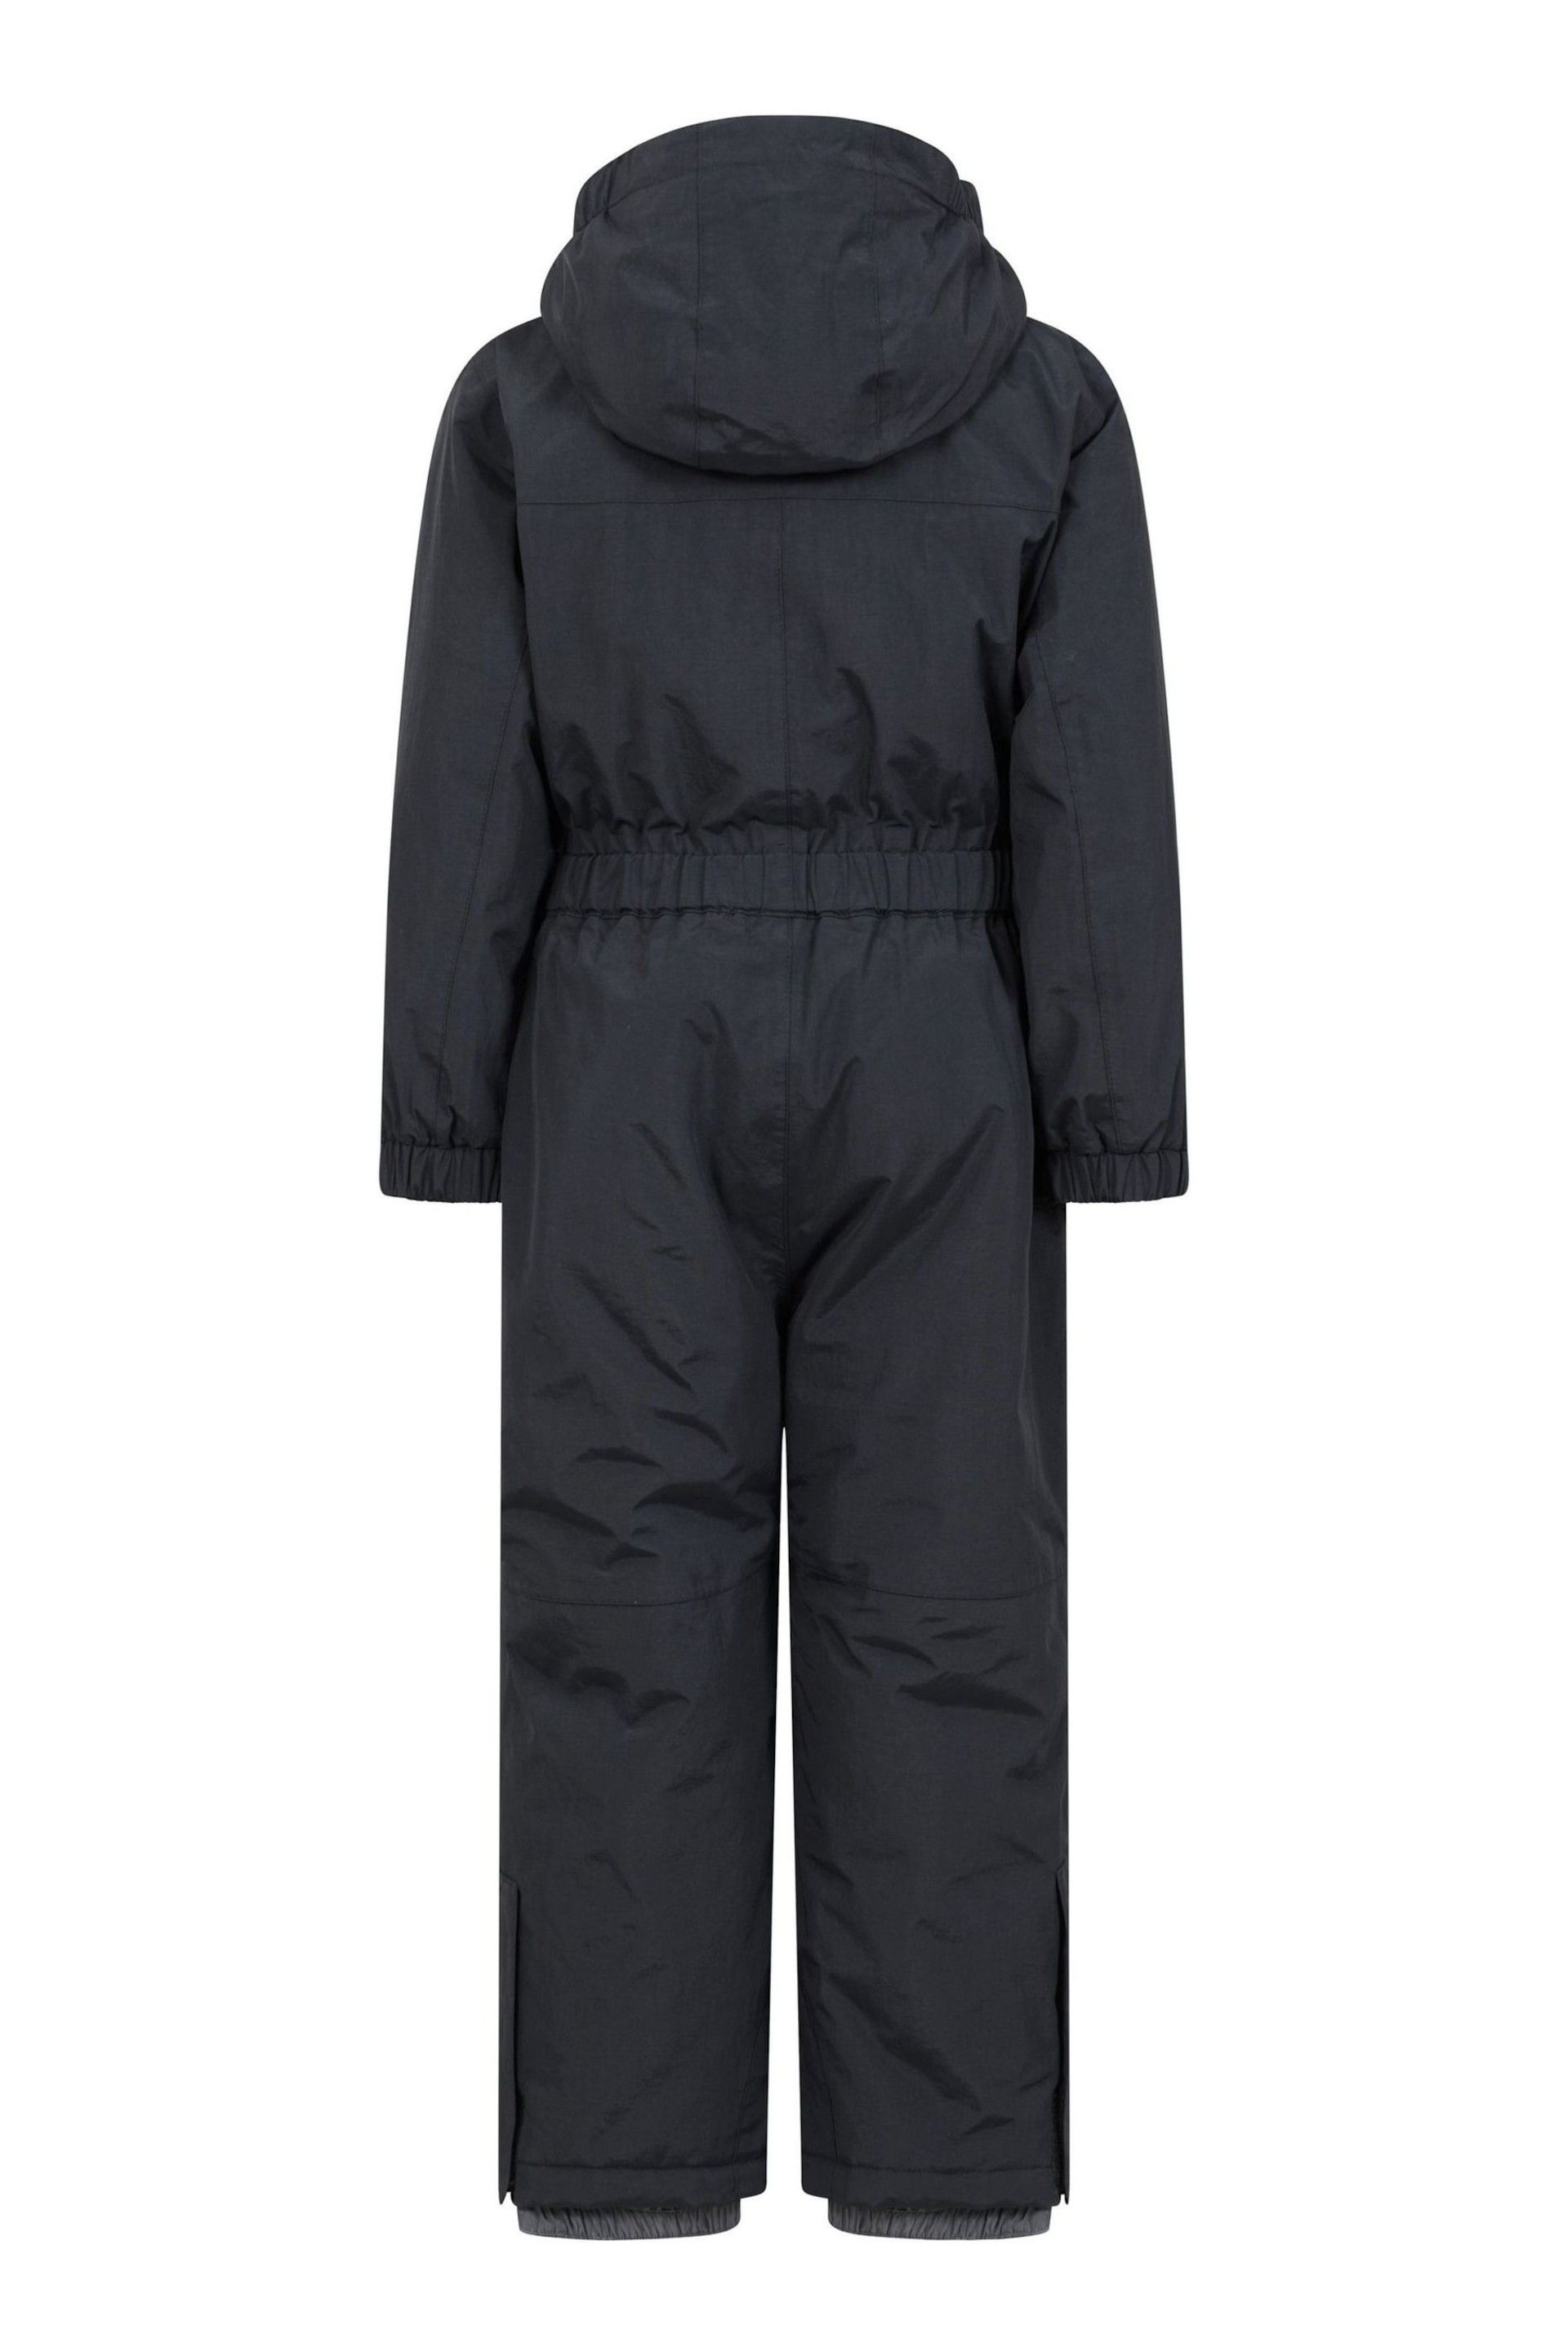 Mountain Warehouse Black Cloud Kids All In One Waterproof Fleece Lined Snowsuit - Image 3 of 6